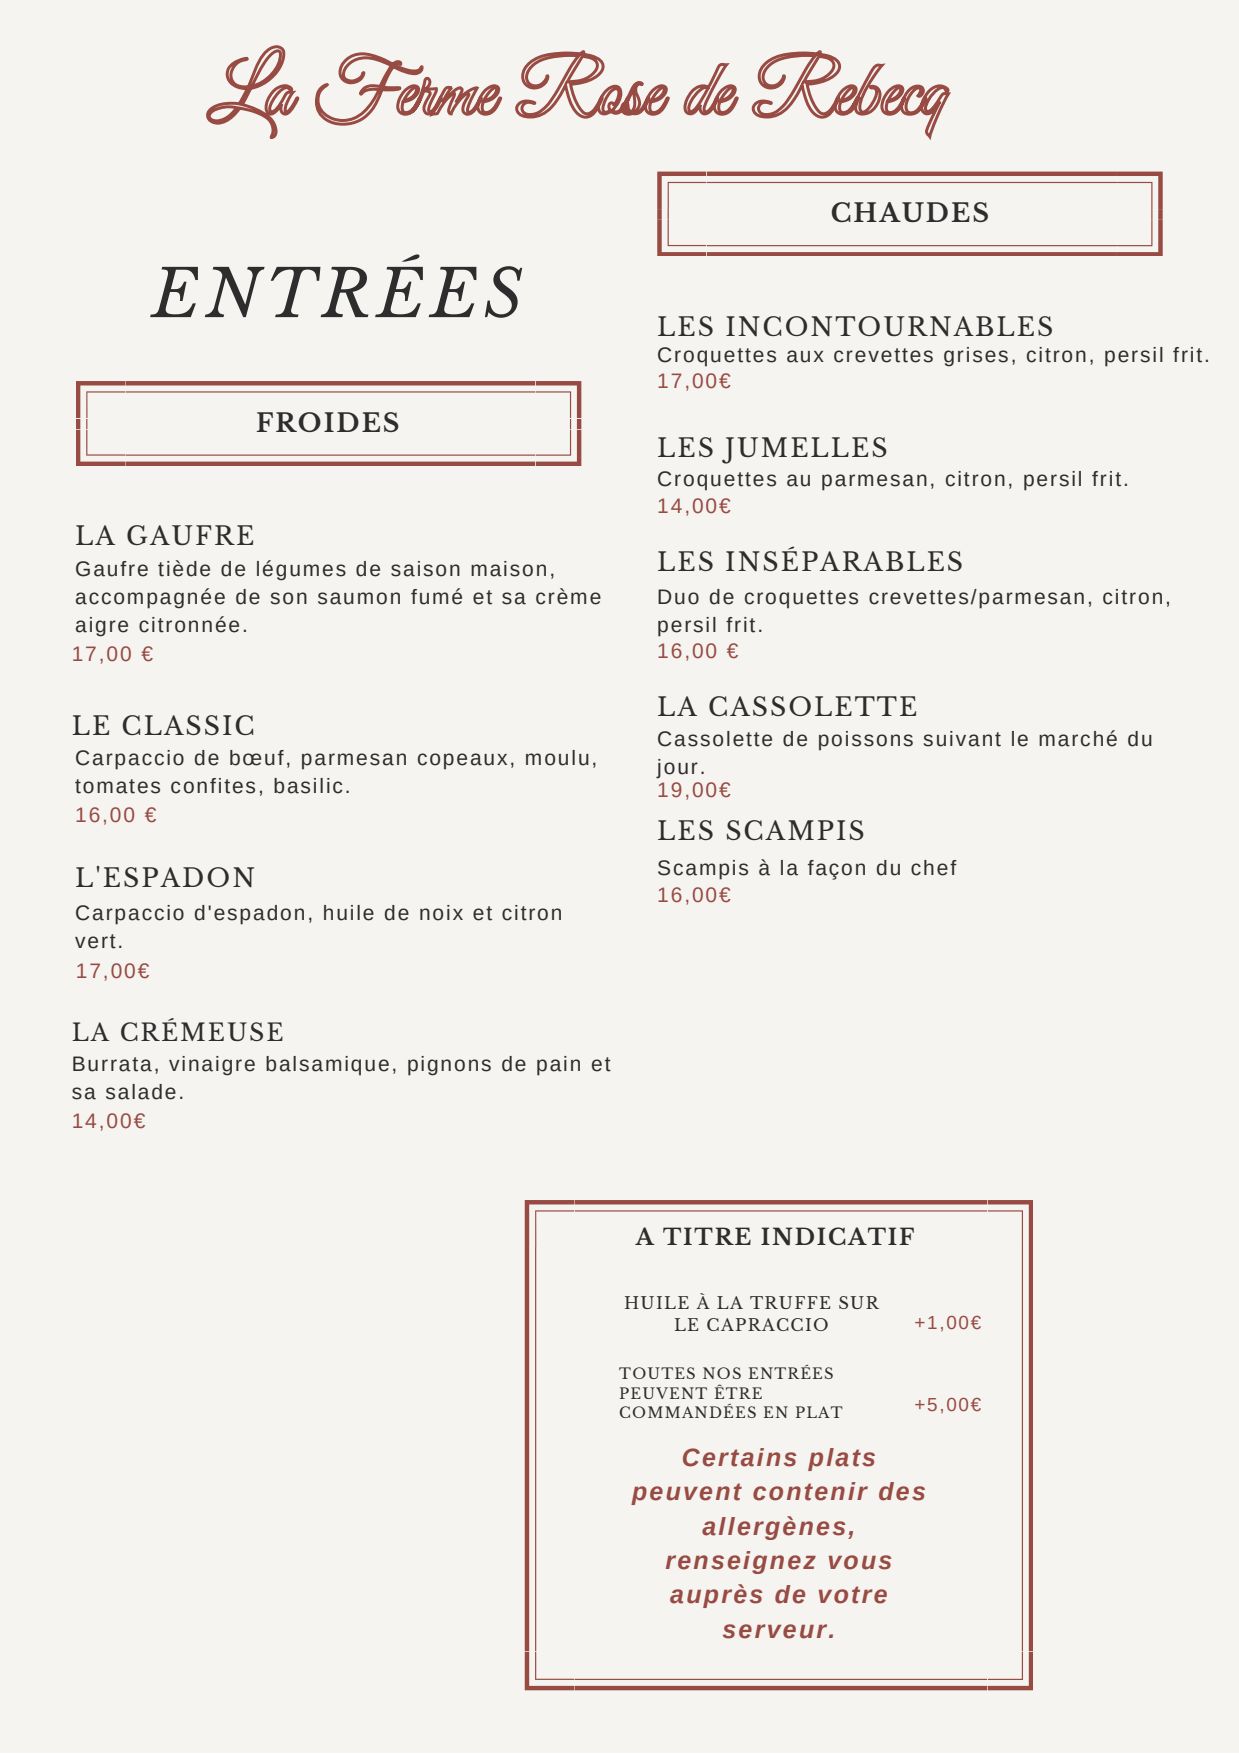 Buffet entrées froides : présentation - Picture of La Ferme Rose